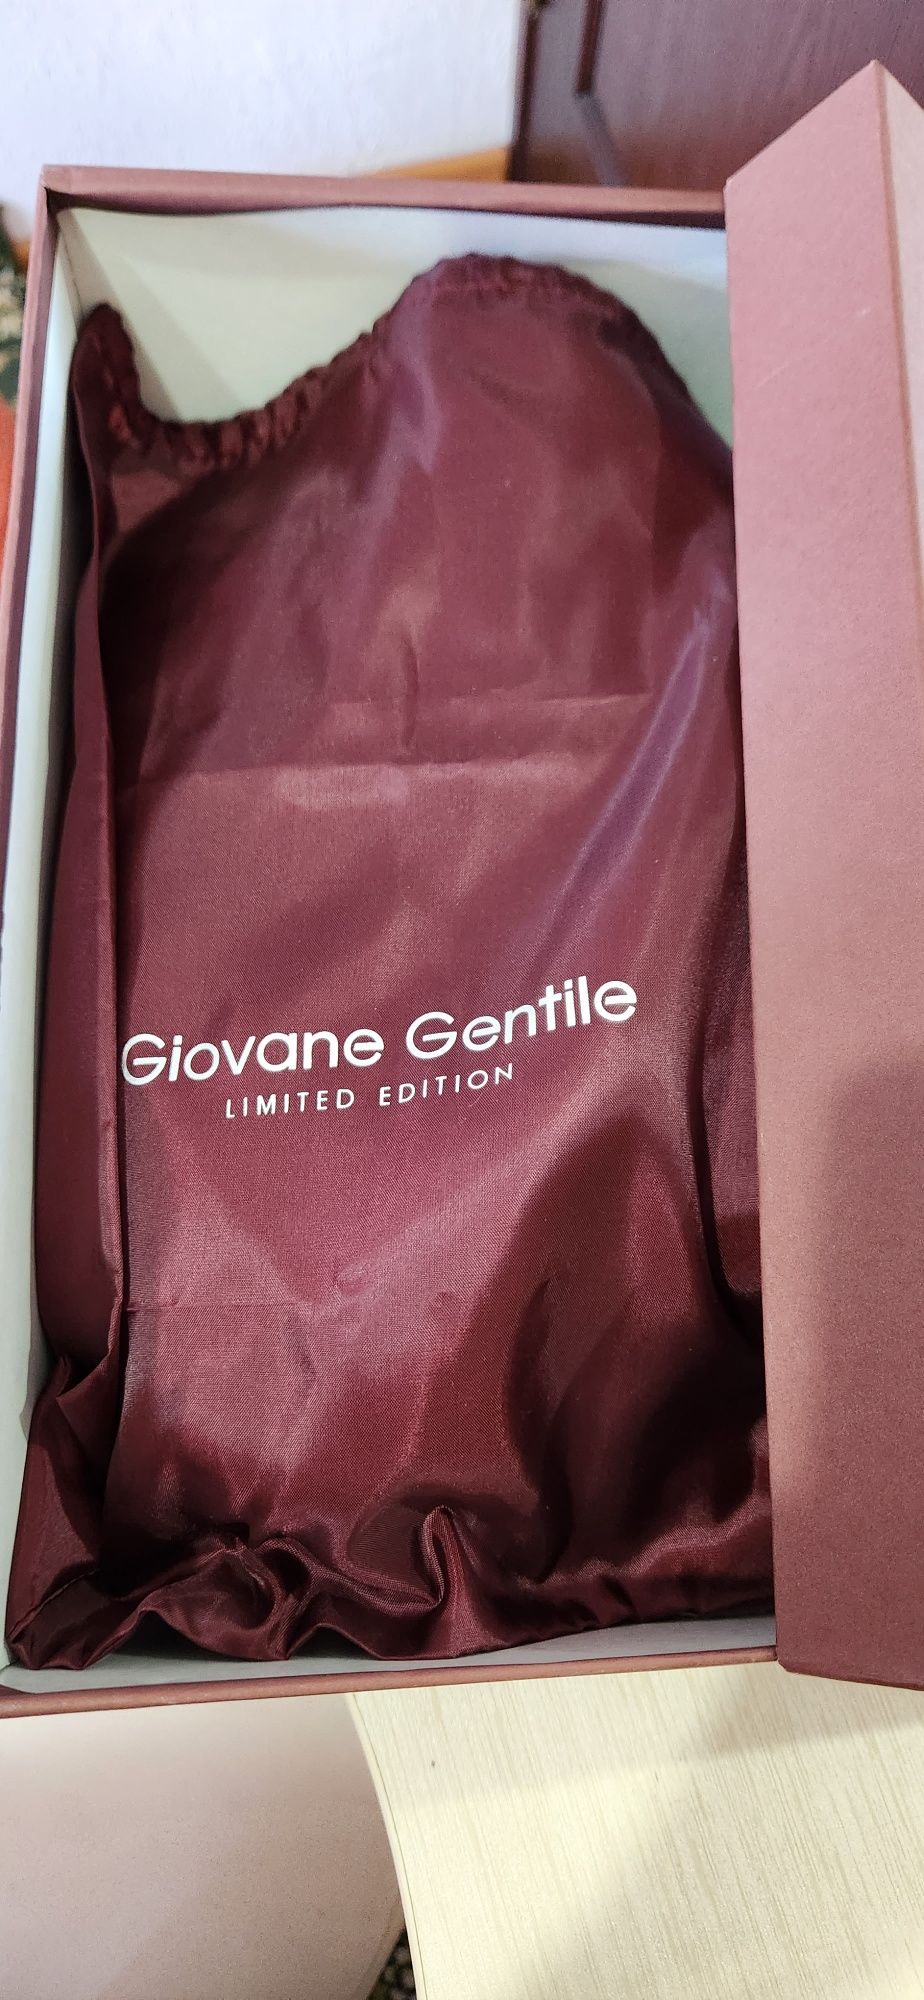 Продаётся обувь итальянской бренд giovani gentile